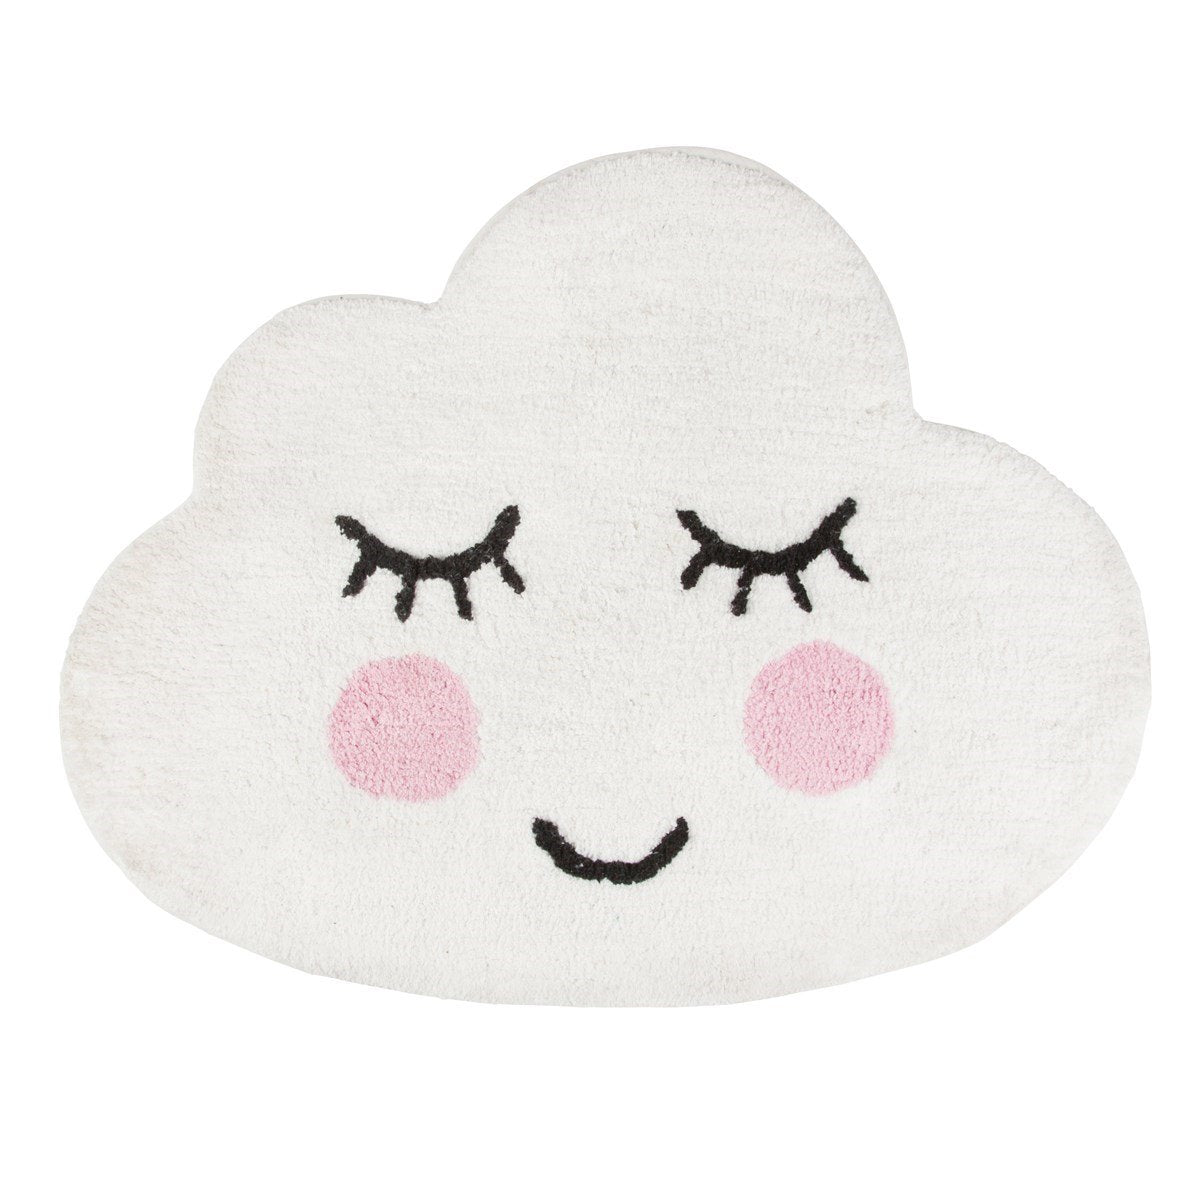 Sweet Dreams Smiling Cloud Rug